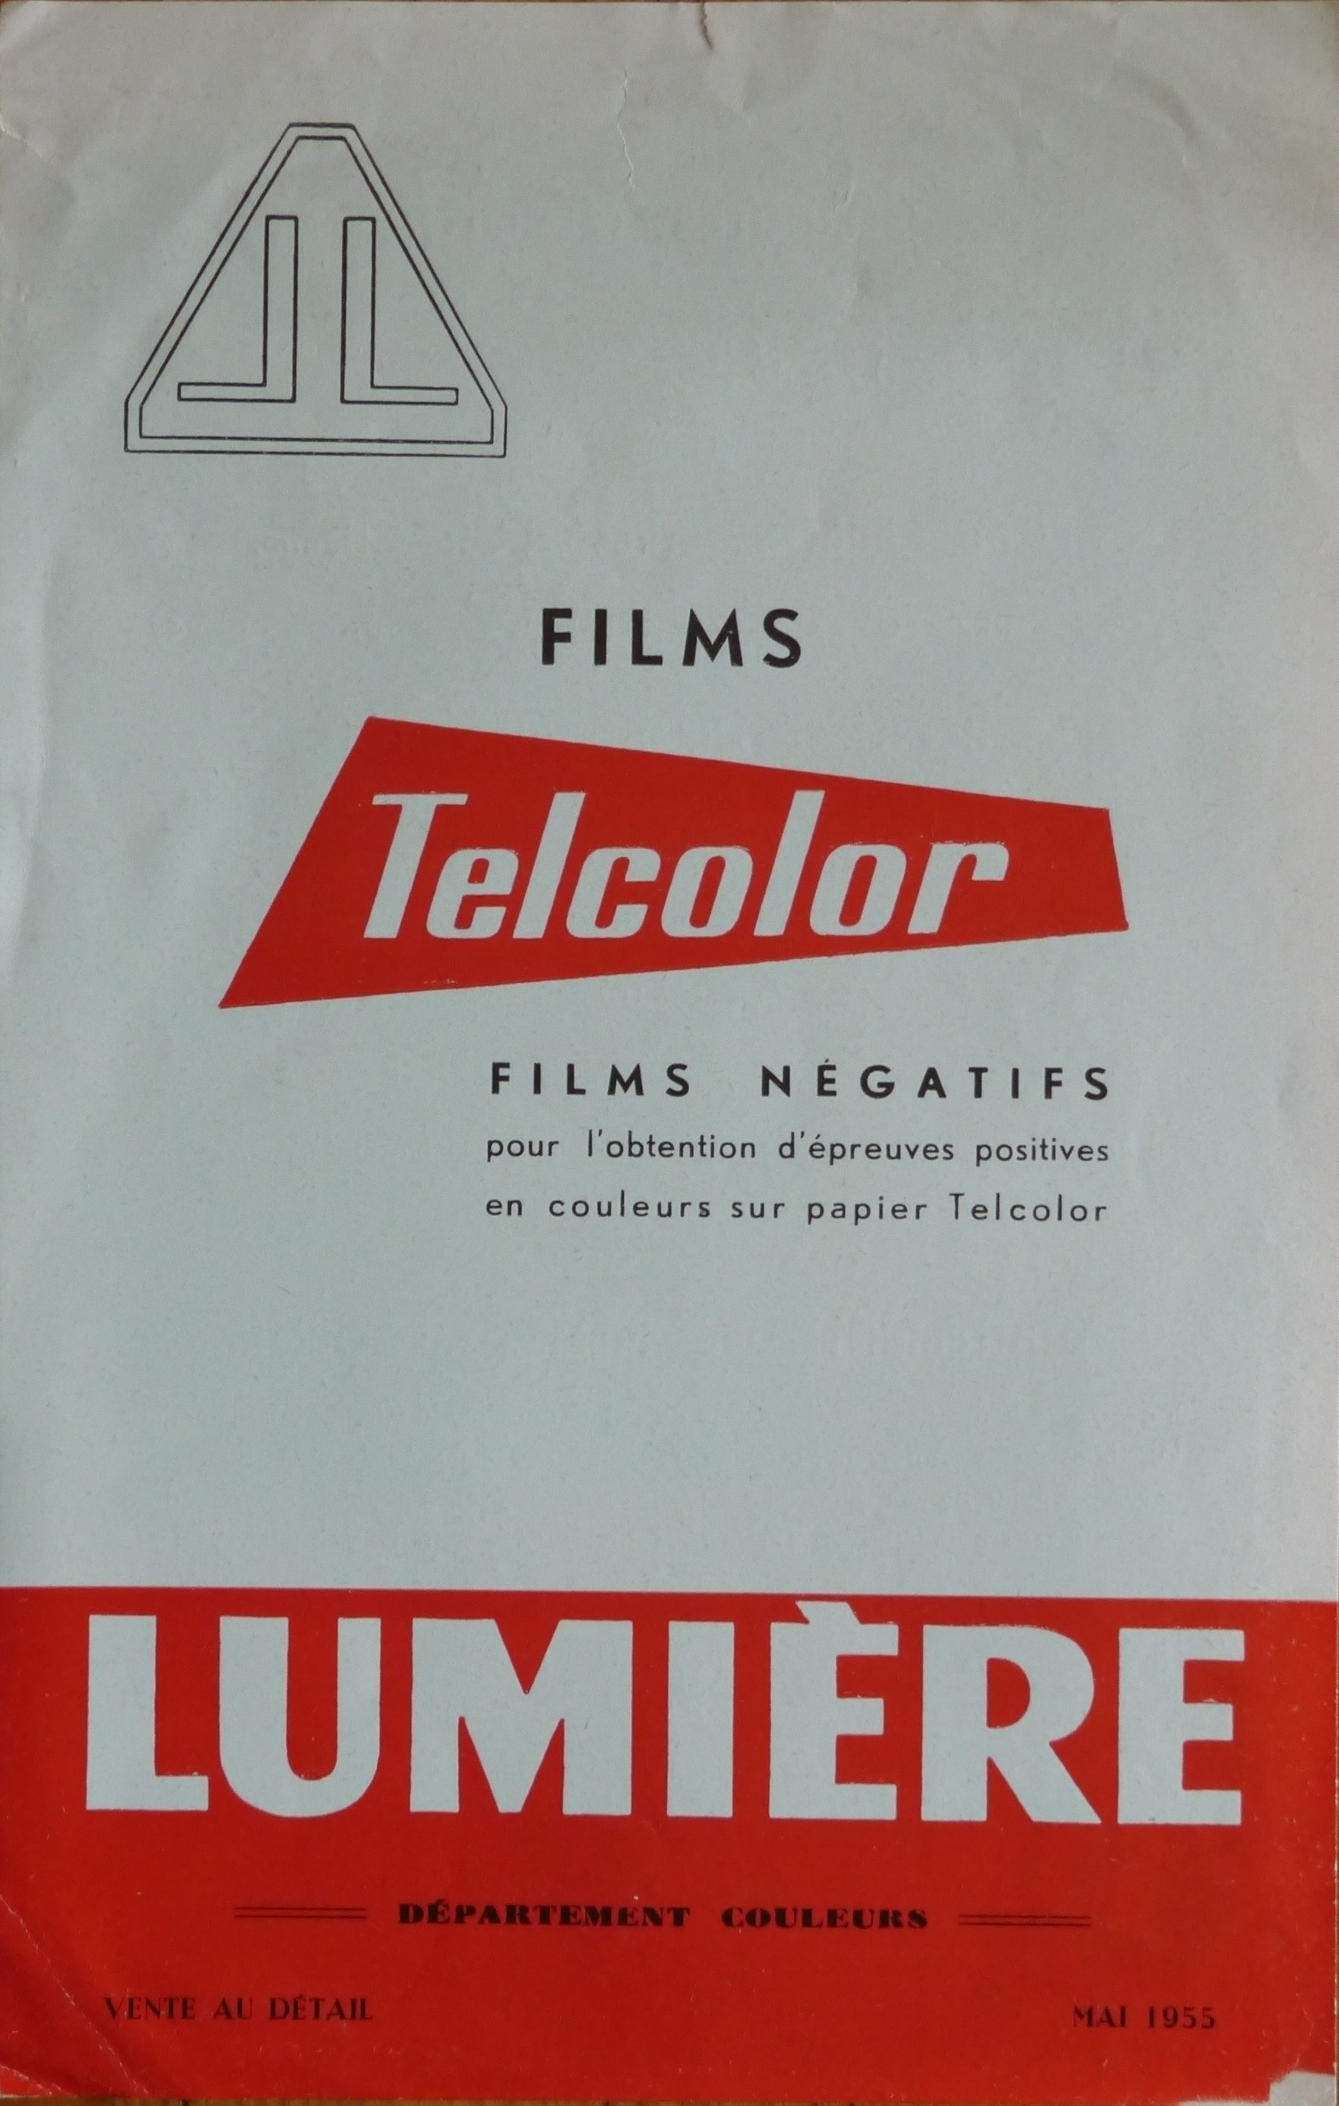 1955-05 - Sté Lumière - Notice Telcolor